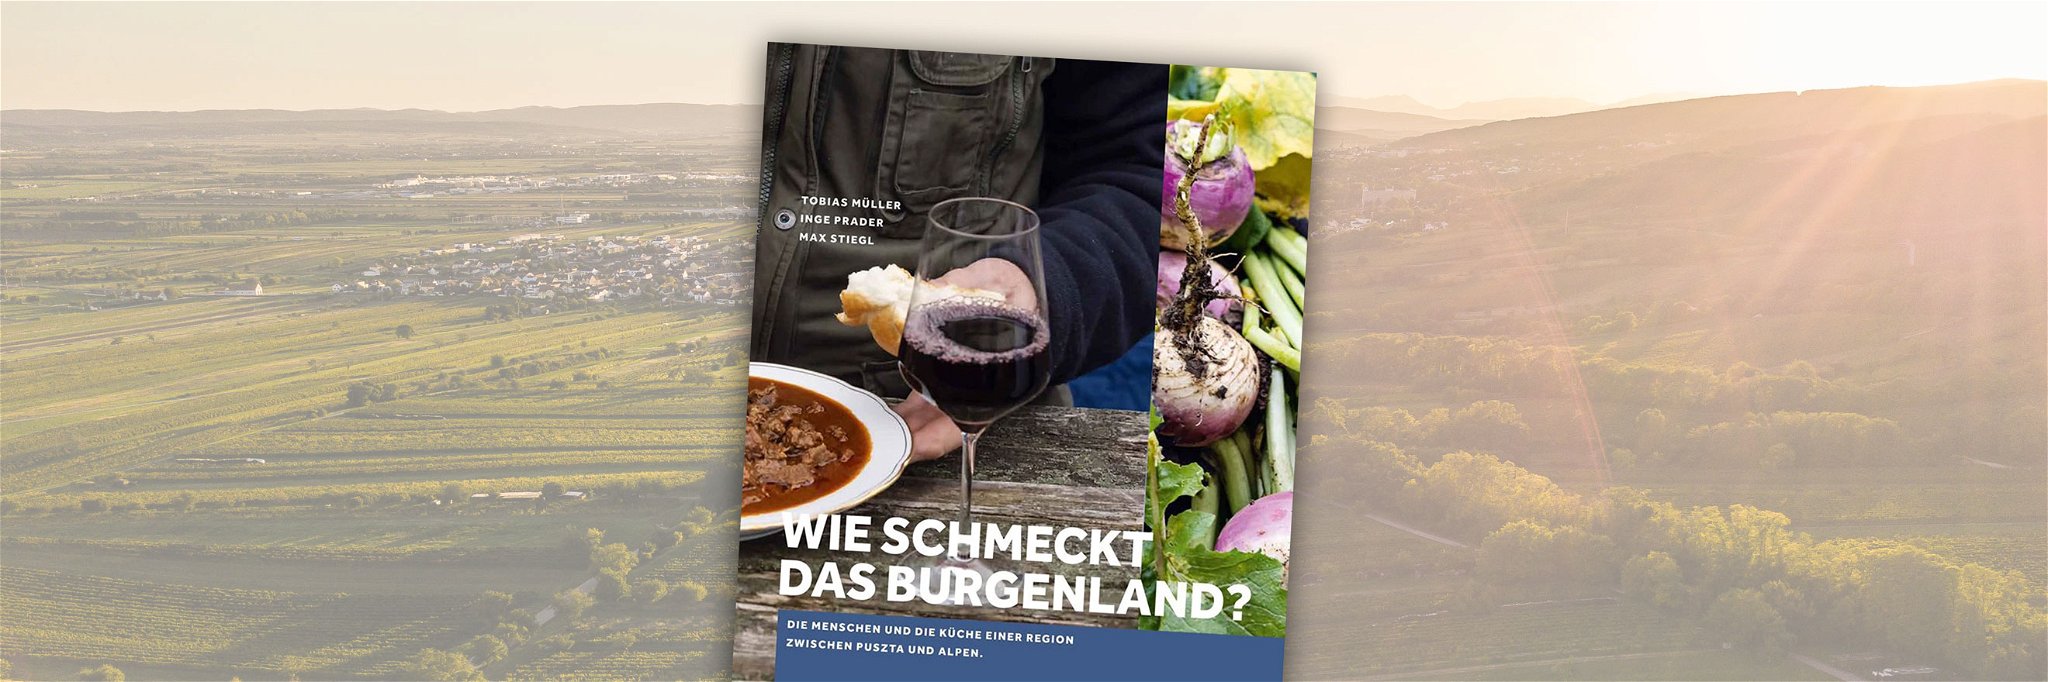 Das kulinarische Burgenland in Buchform.